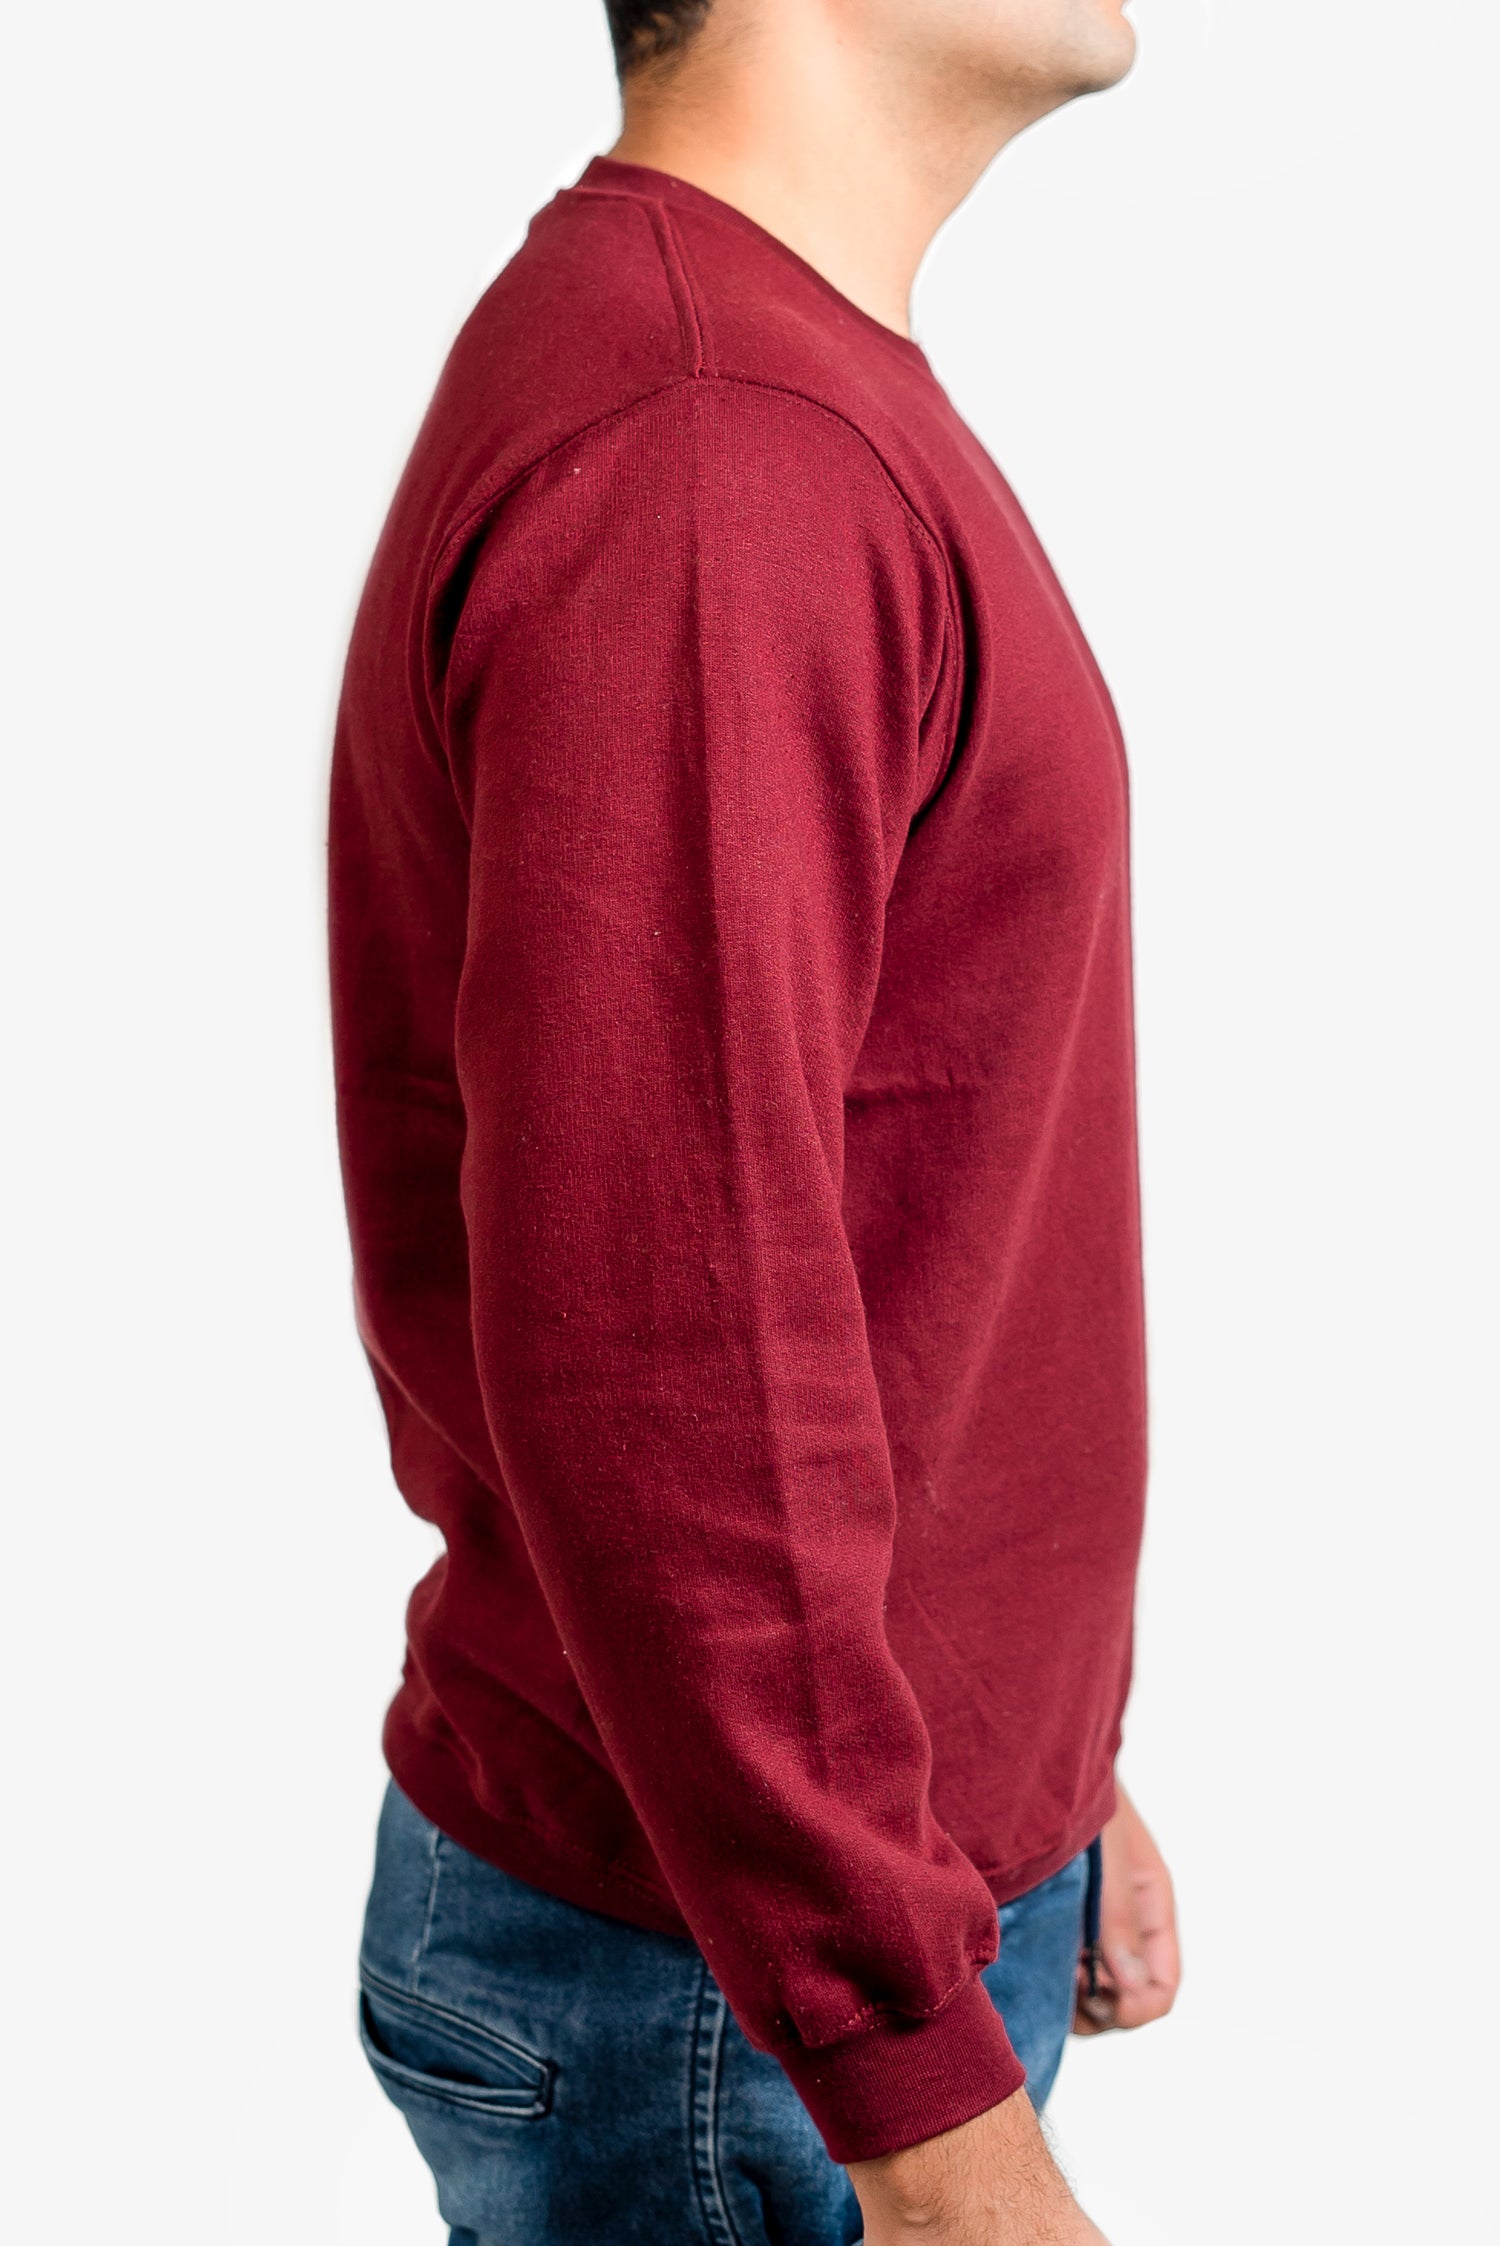 Basic Burgundy Sweatshirt // Men - teehoodie.co